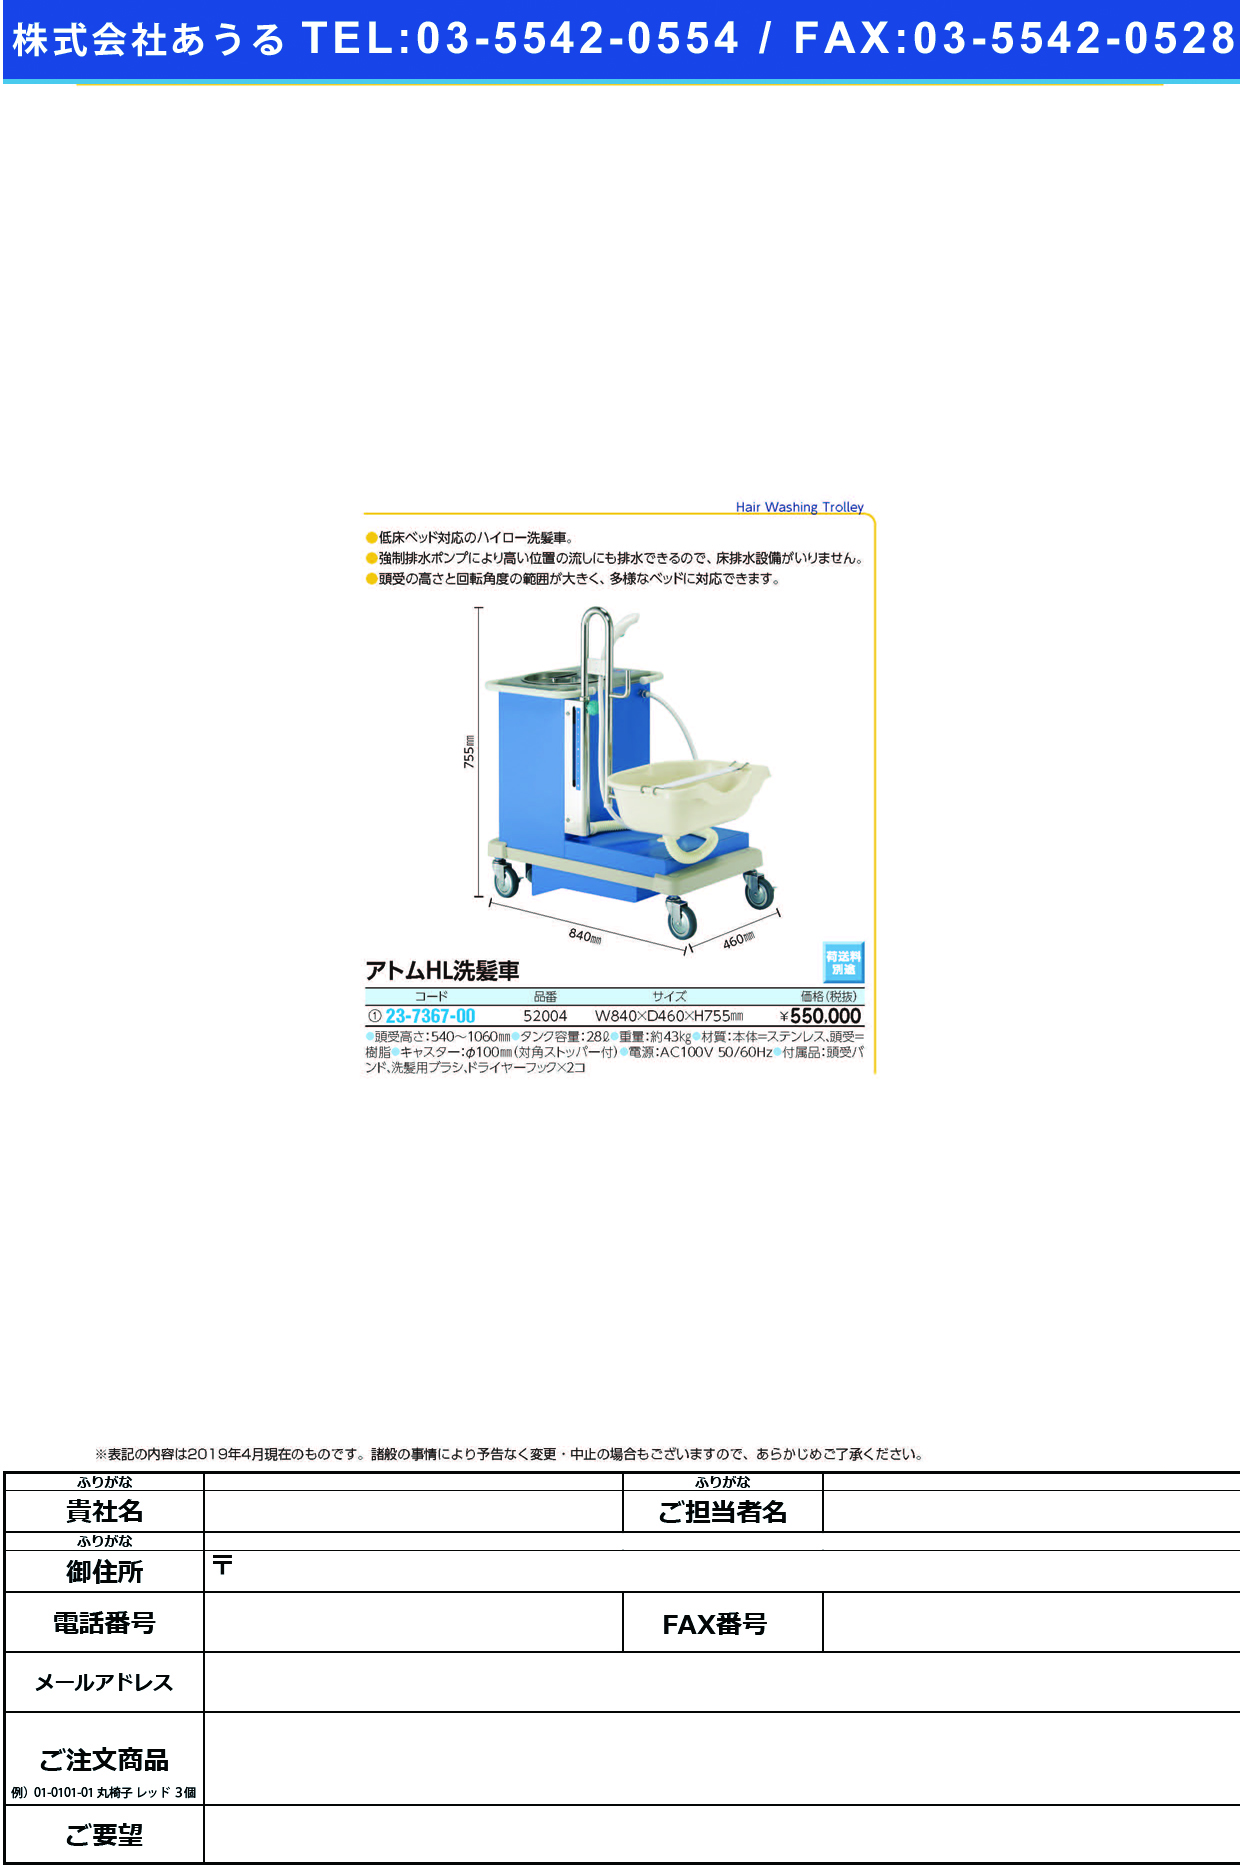 (23-7367-00)アトムＨＬ洗髪車 52004 ｱﾄﾑHLｾﾝﾊﾟﾂｼｬ(アトムメディカル)【1台単位】【2019年カタログ商品】